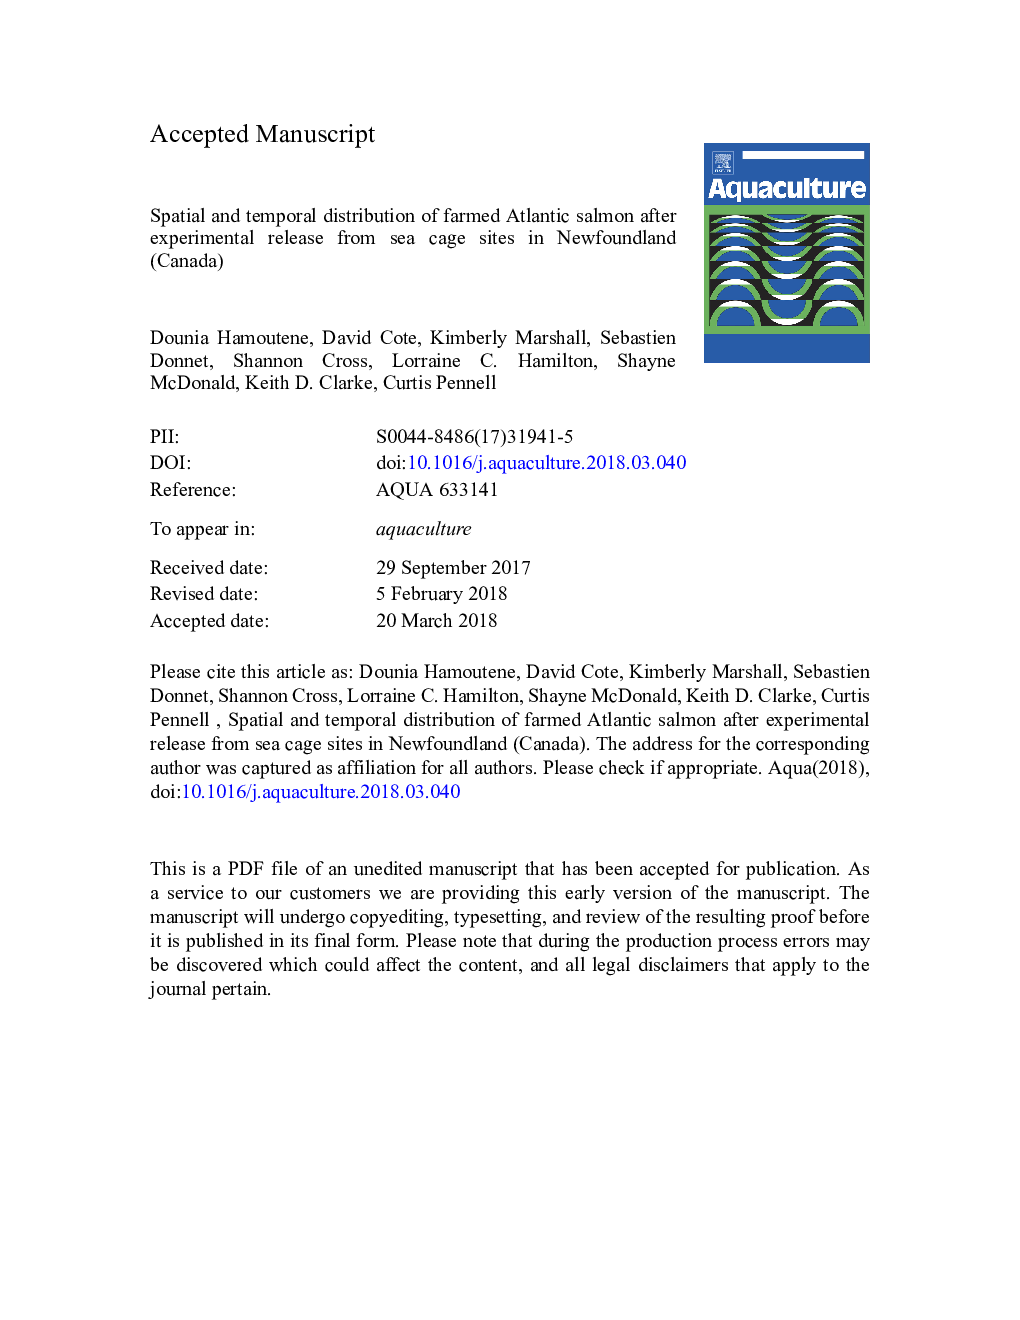 توزیع فضایی و طولانی ماهی قزل آلا آلبانی مزرعه بعد از آزمایشی از سایت های قفس دریایی در نیوفاندلند (کانادا) 